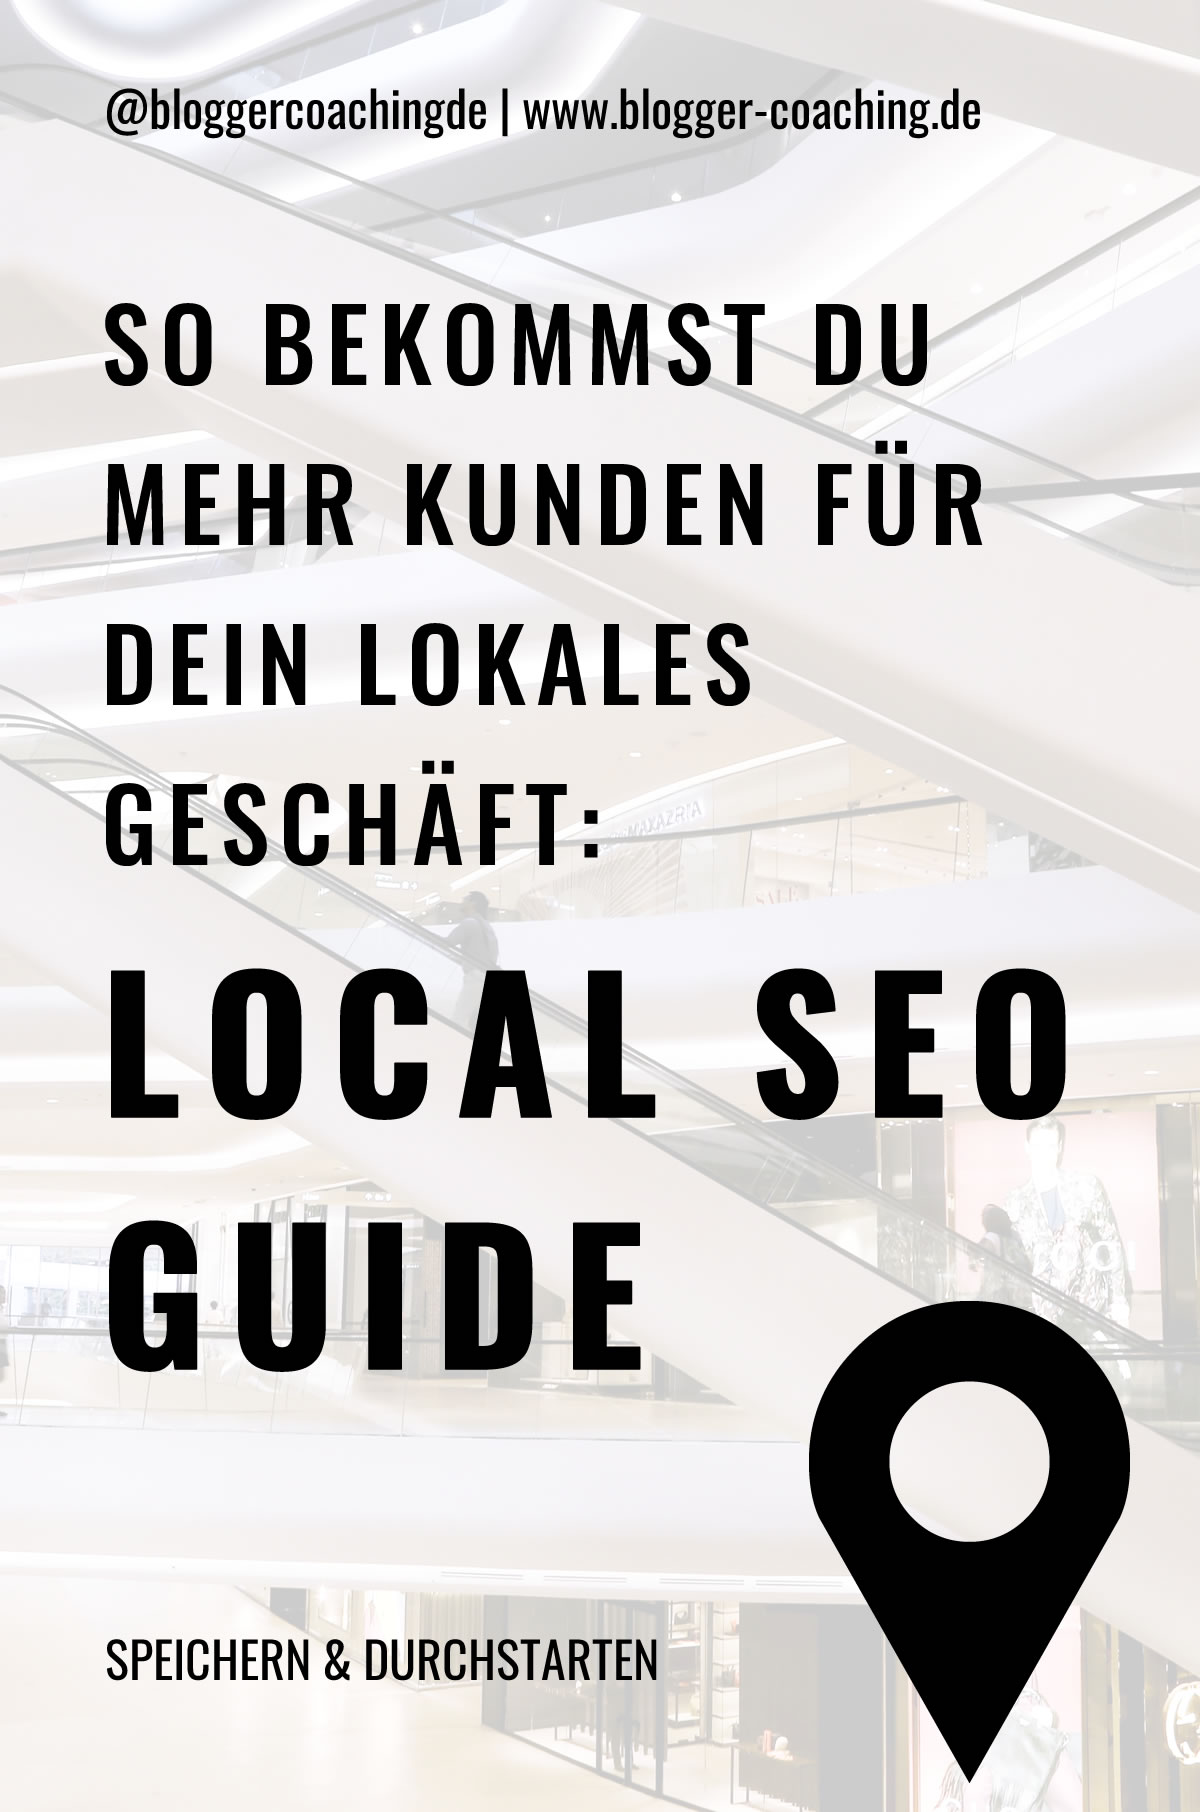 Local SEO: 5 effektive Tipps für mehr Kunden | Blogger-Coaching.de - Tipps & Kurse für Blogger